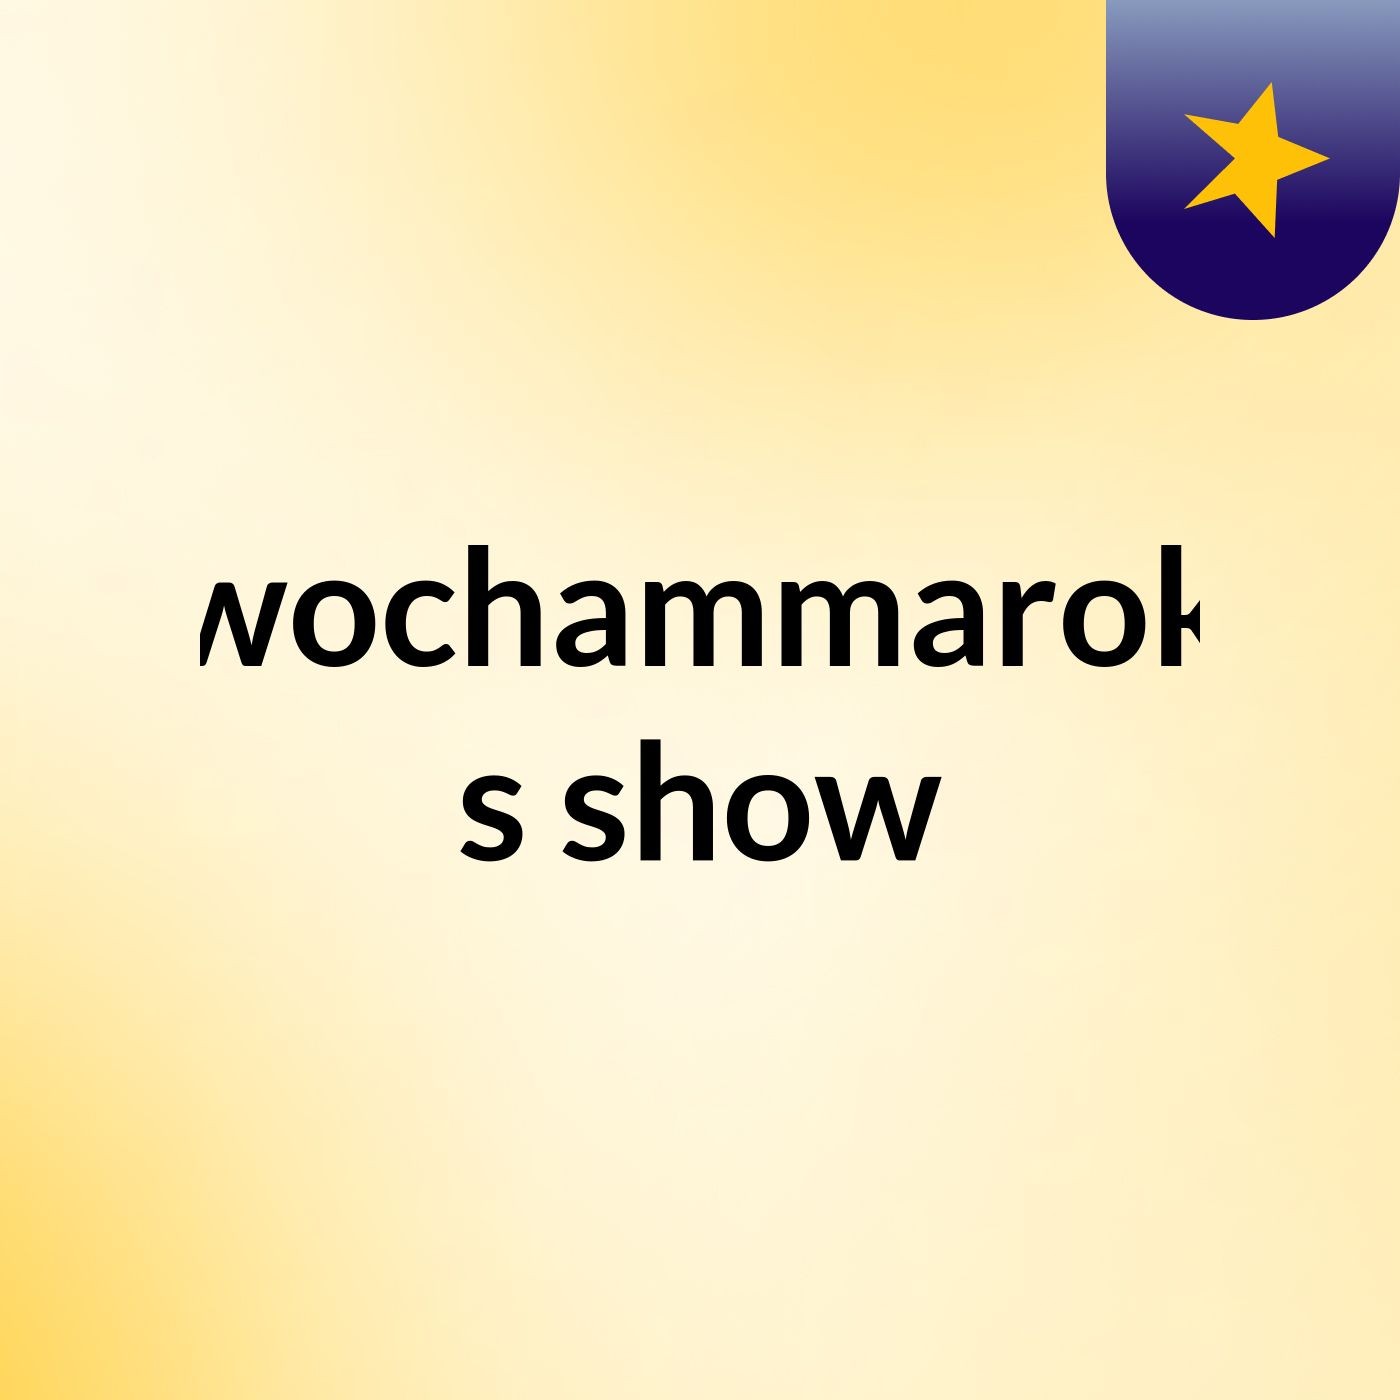 wochammarok's show